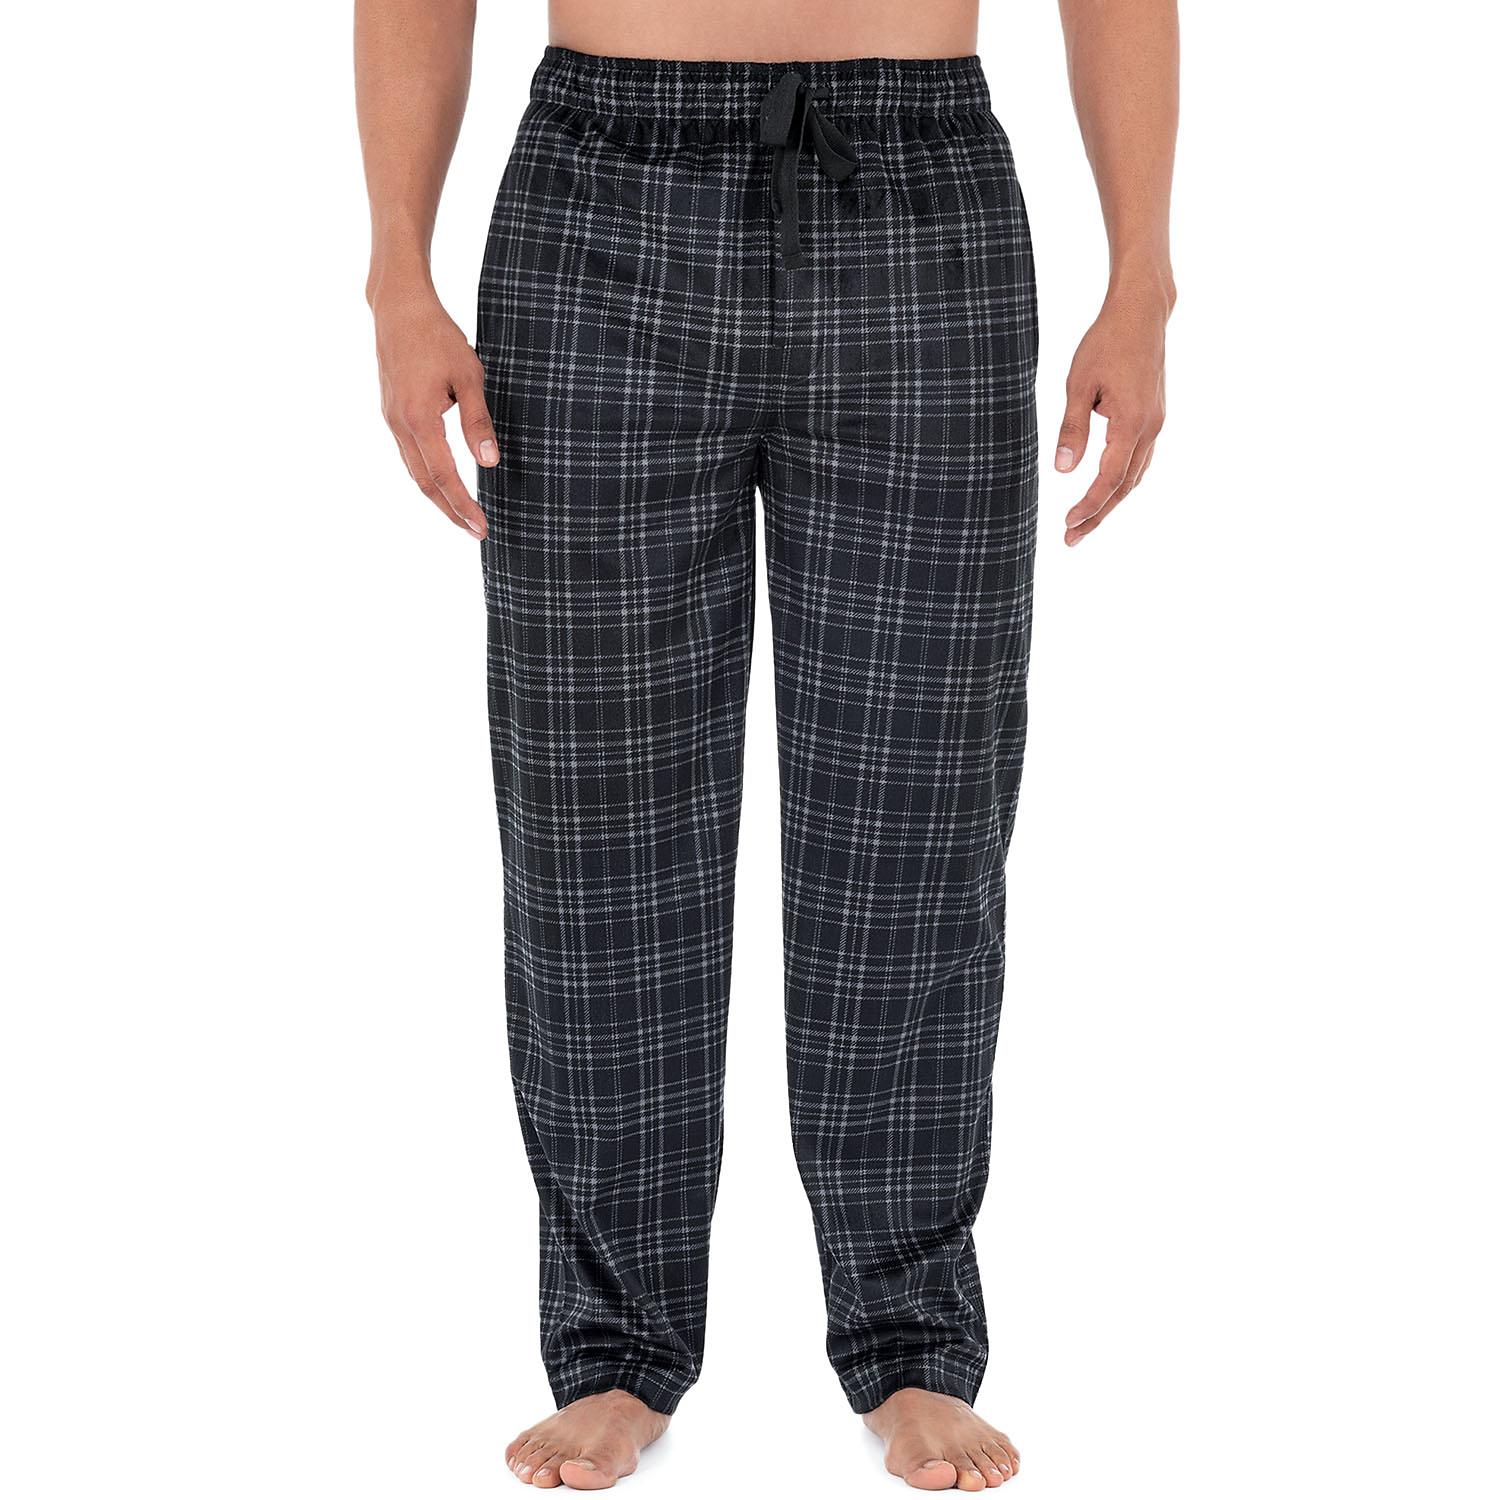 Izod Men's Micro Fleece Pajama Pant in Black, Size Small - image 3 of 3